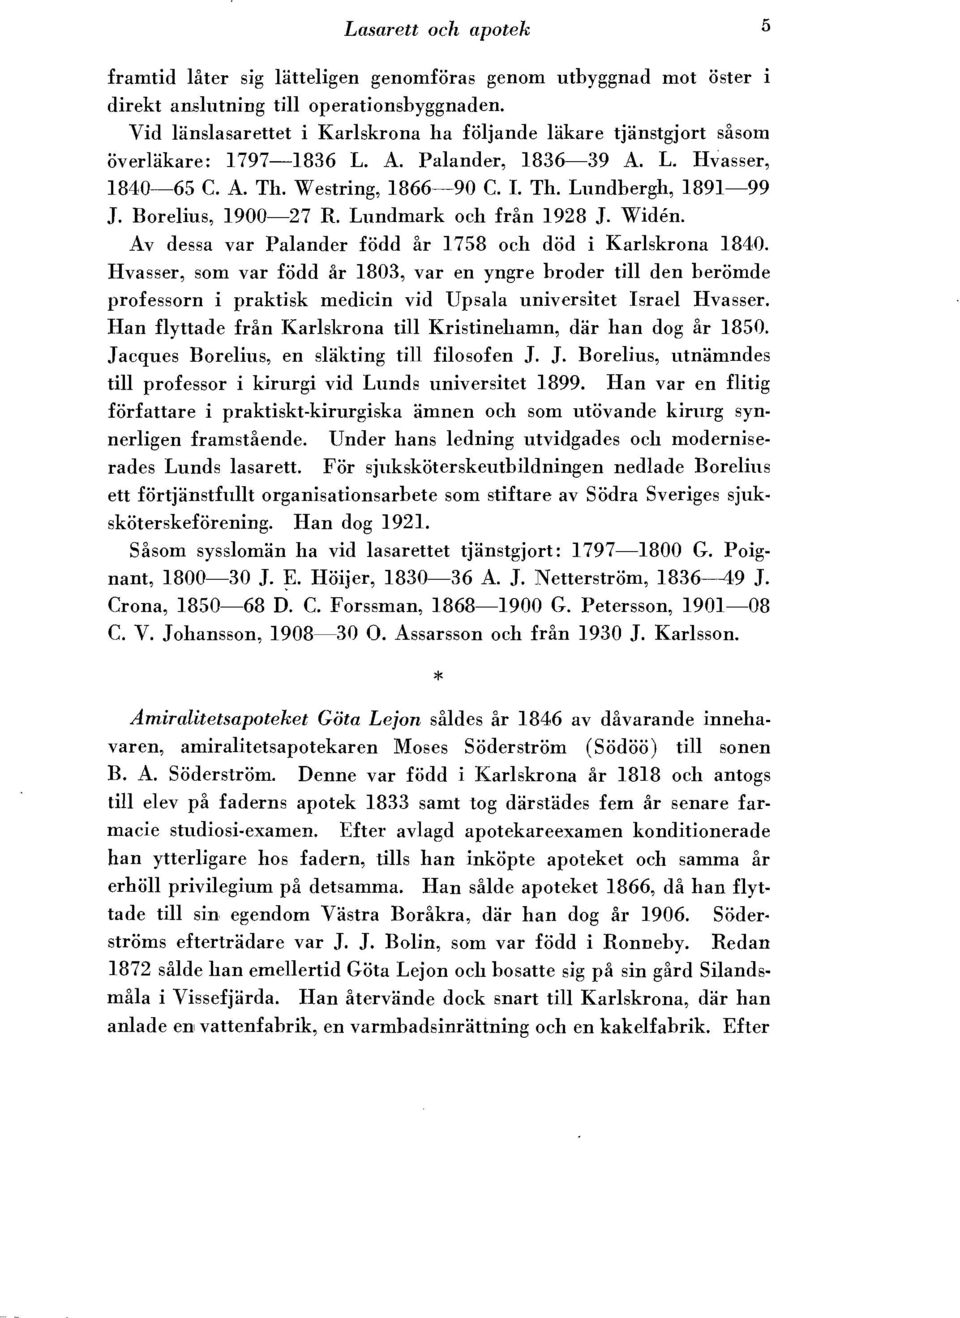 Borelius, 1900-27 R. Lundmark och frfm 1928 J. Widen. Av dessa var Palander fodd ar 1758 och dod i Karlskrona 1840.